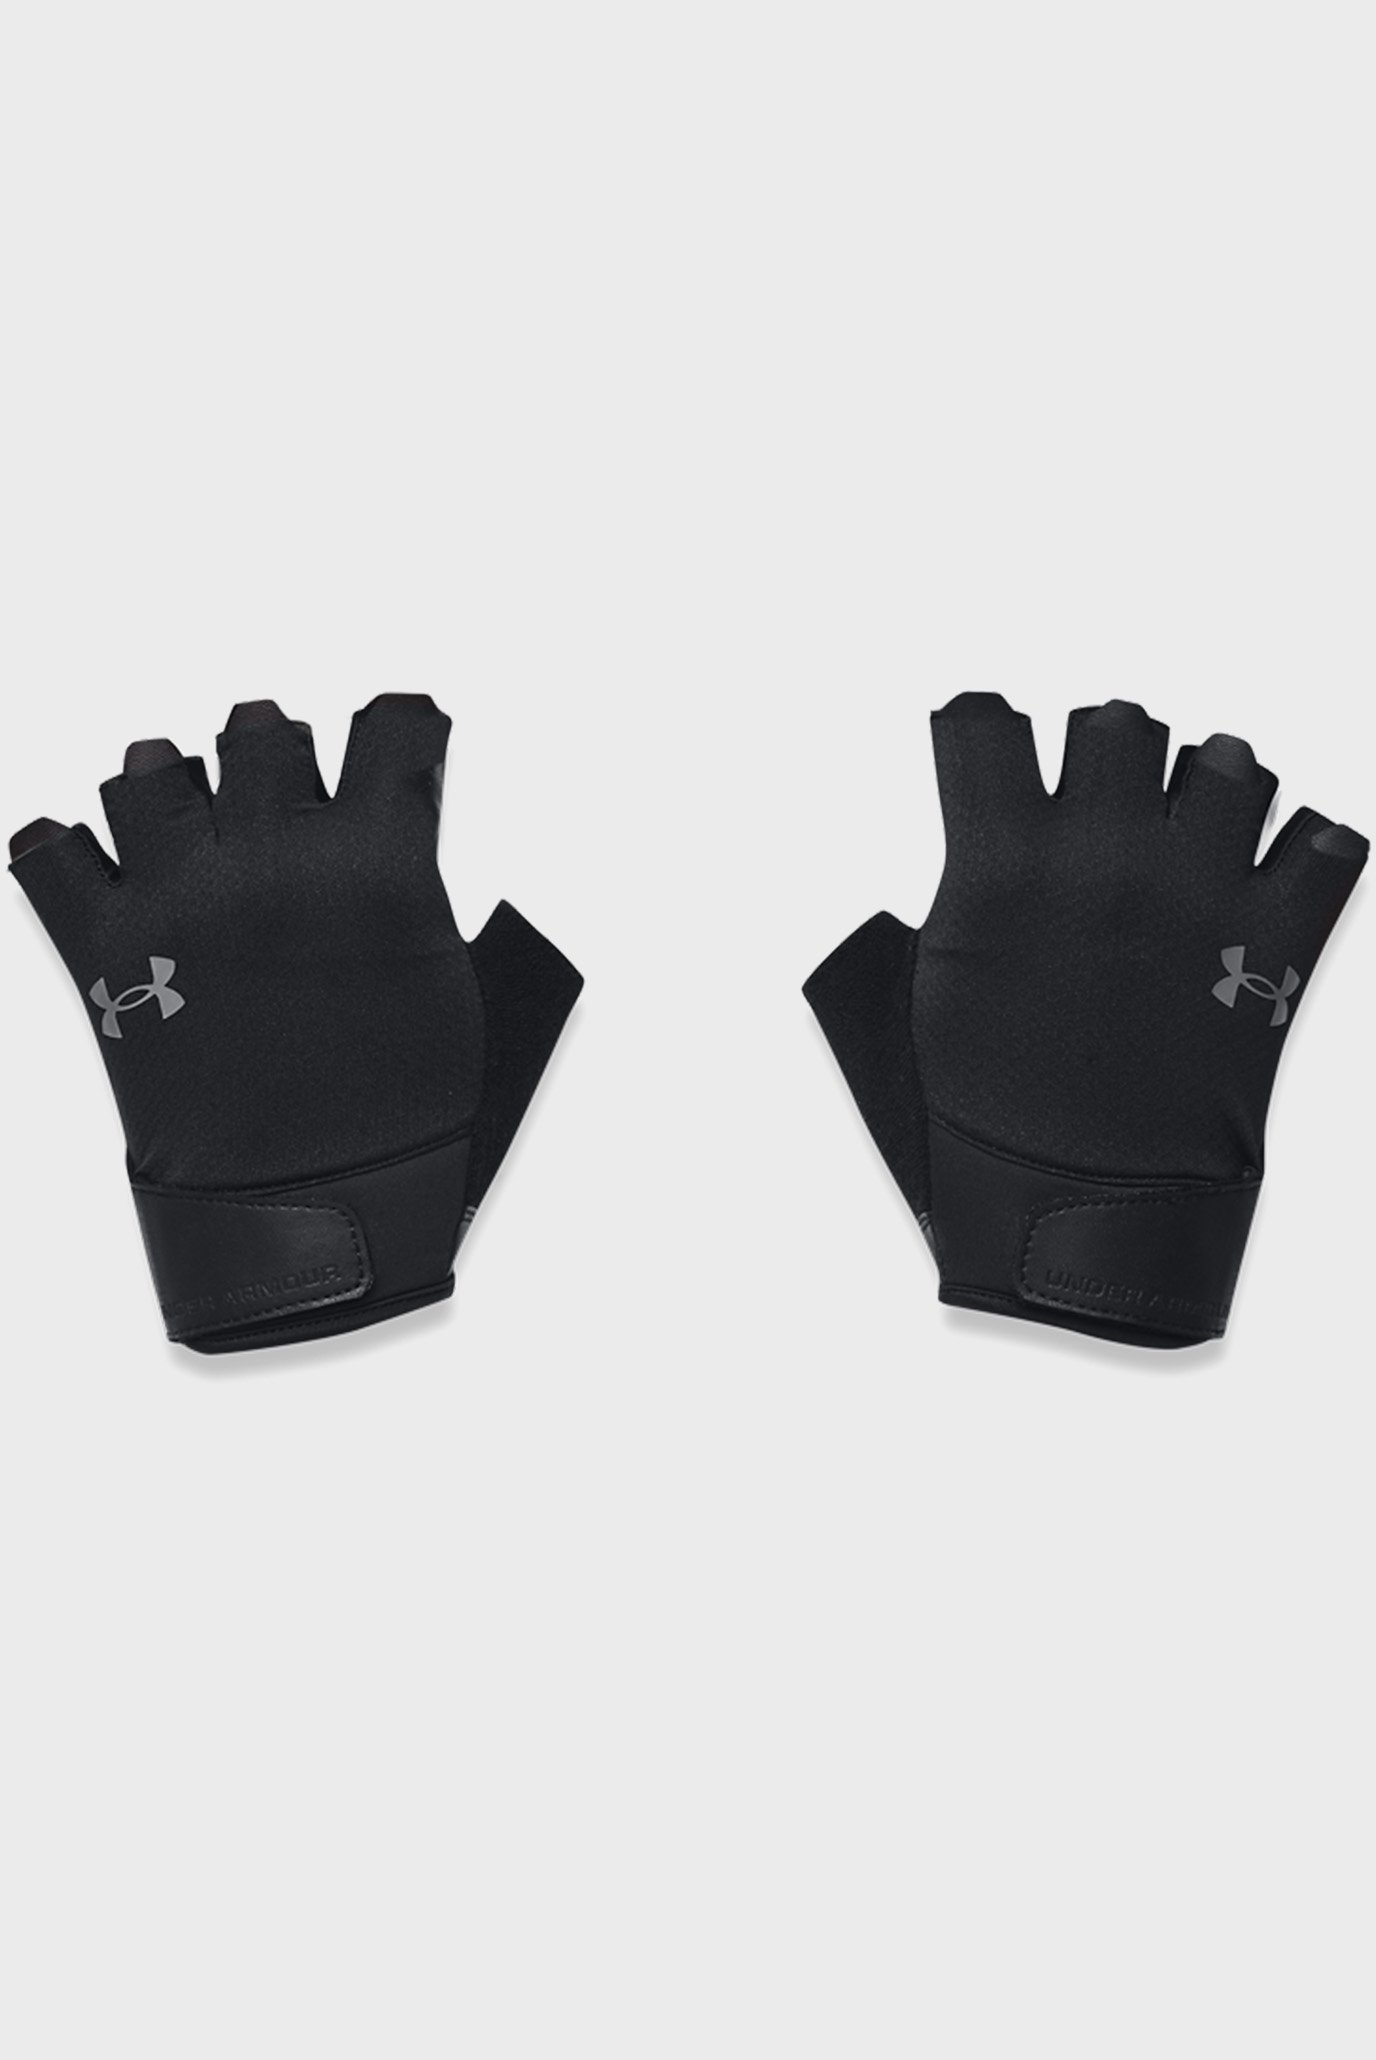 Чоловічі чорні рукавички M's Training Gloves 1